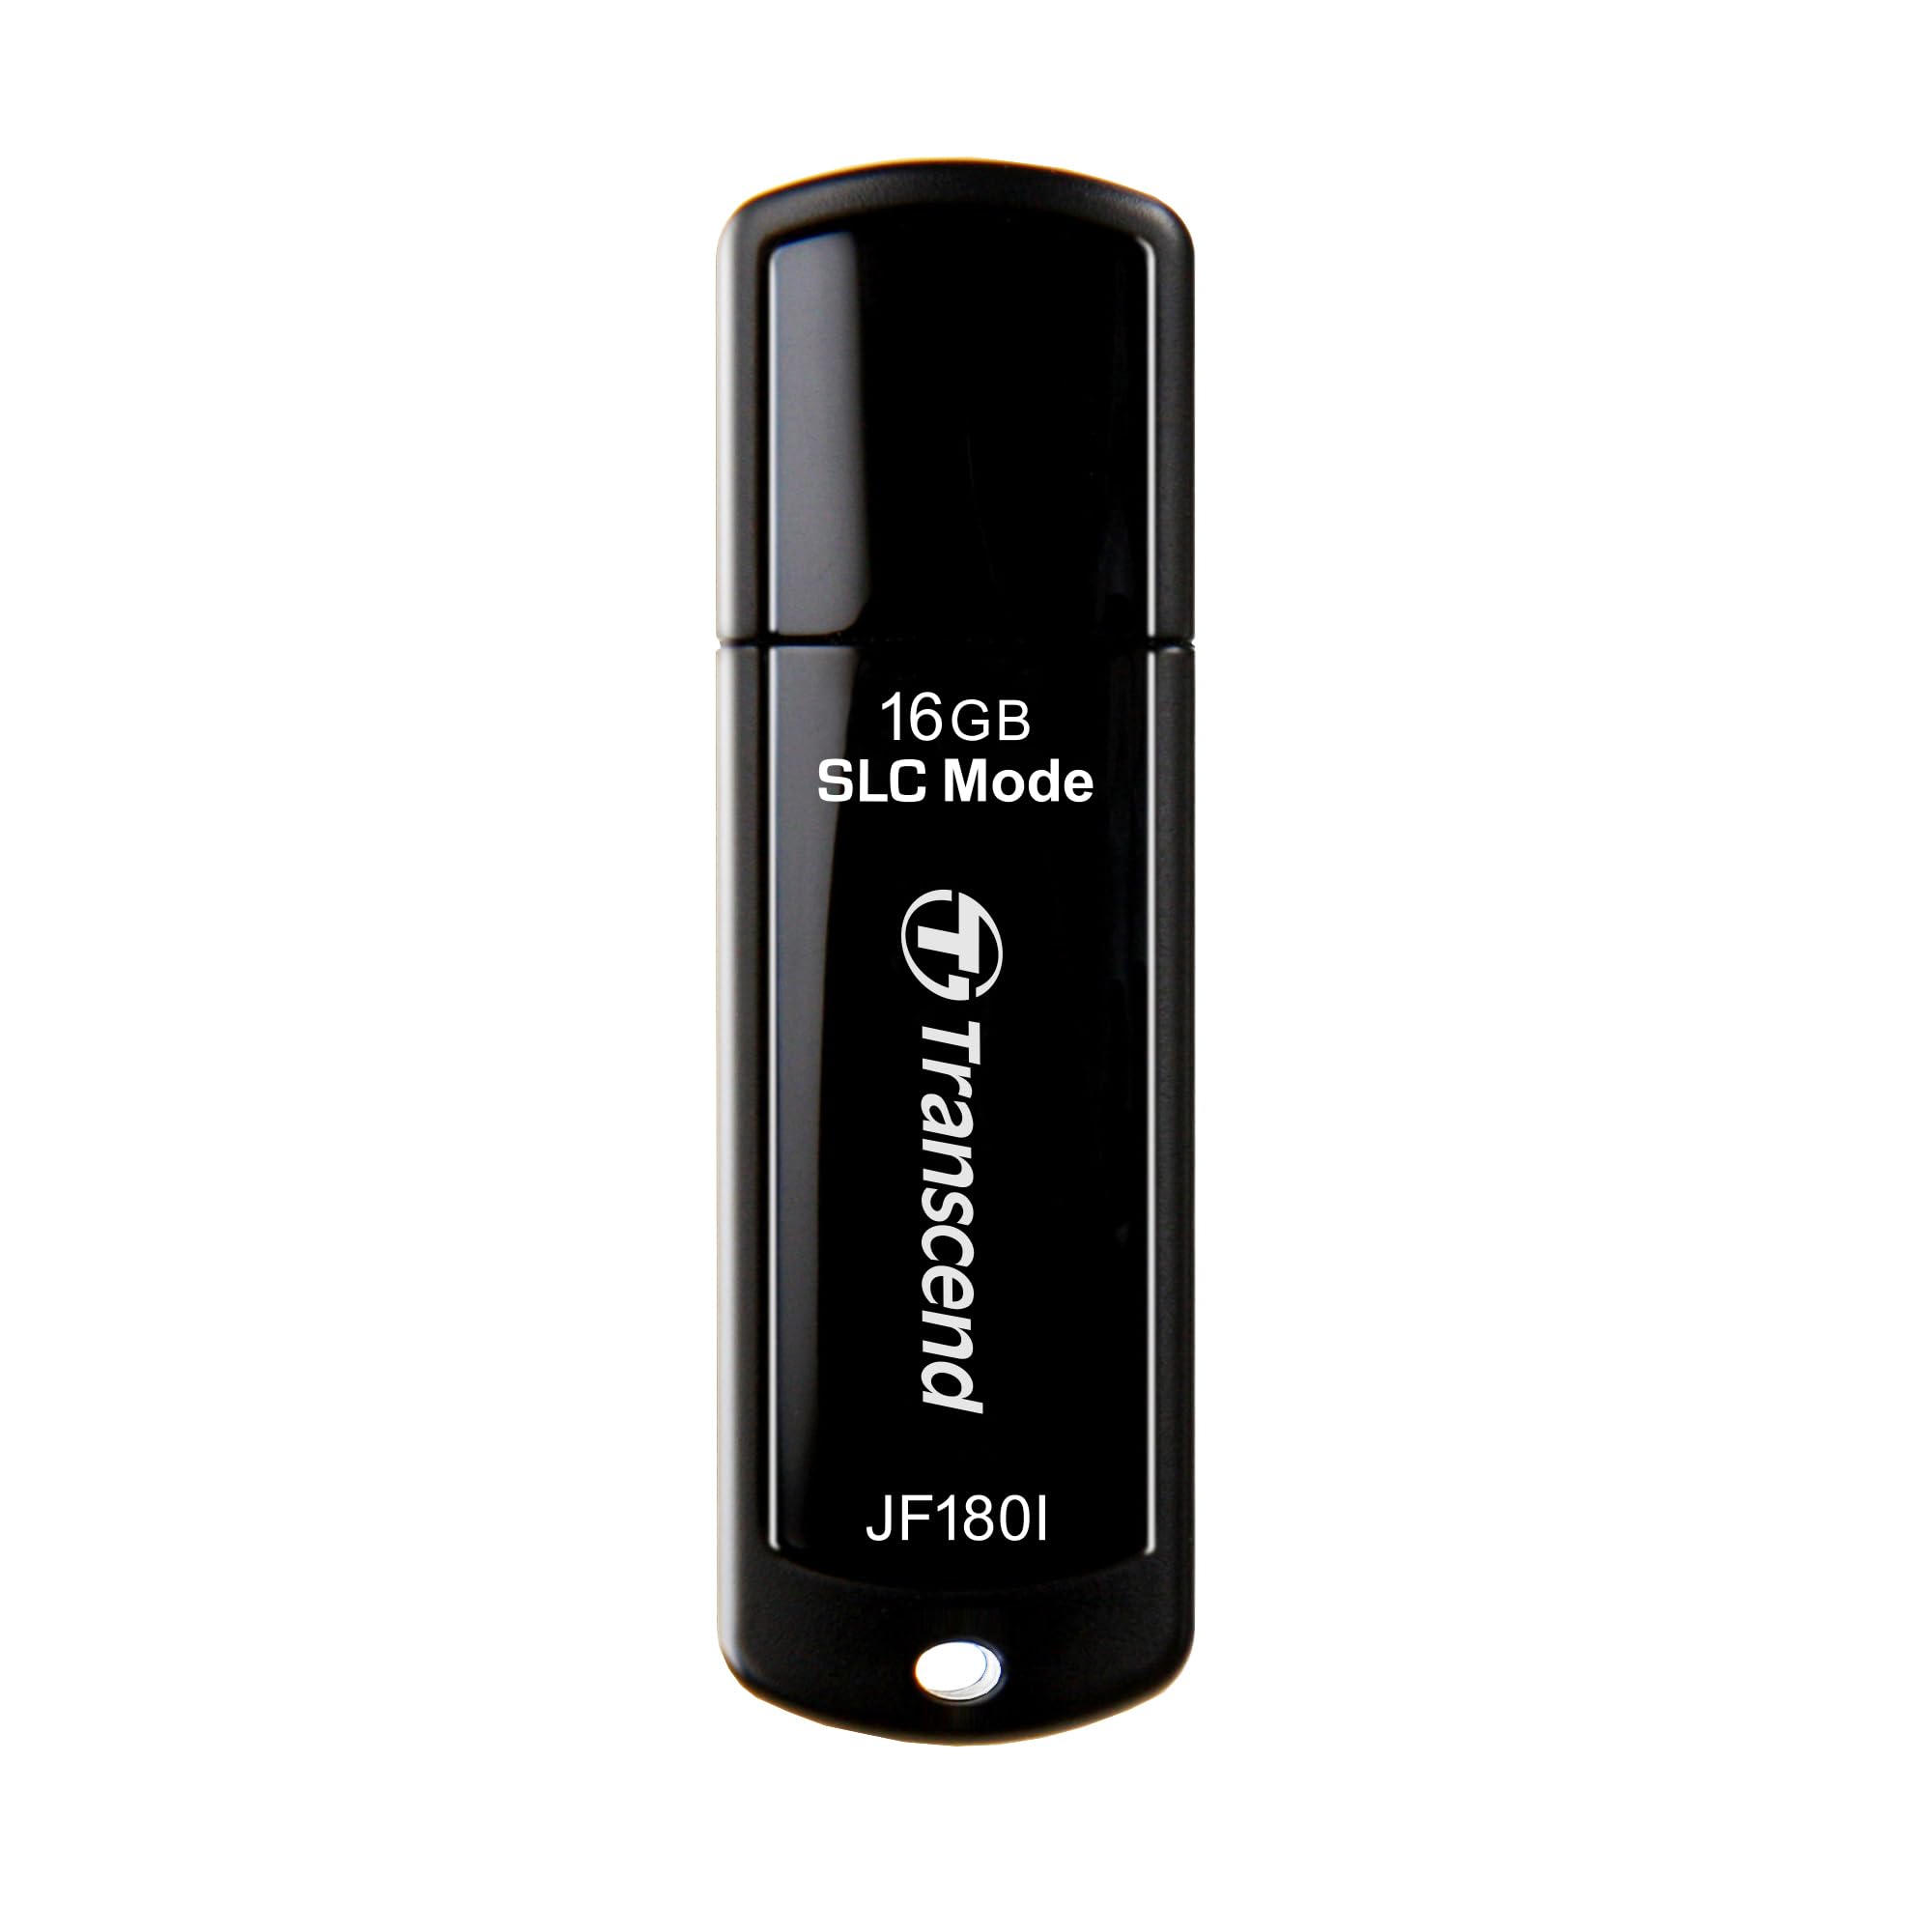 トランセンドジャパン 業務用/産業用 組込向け SLCモード USBメモリ 16GB [TBW: 1,146TB] USB3.0 キャップ式ブラック 高耐久 3年保証 TS1